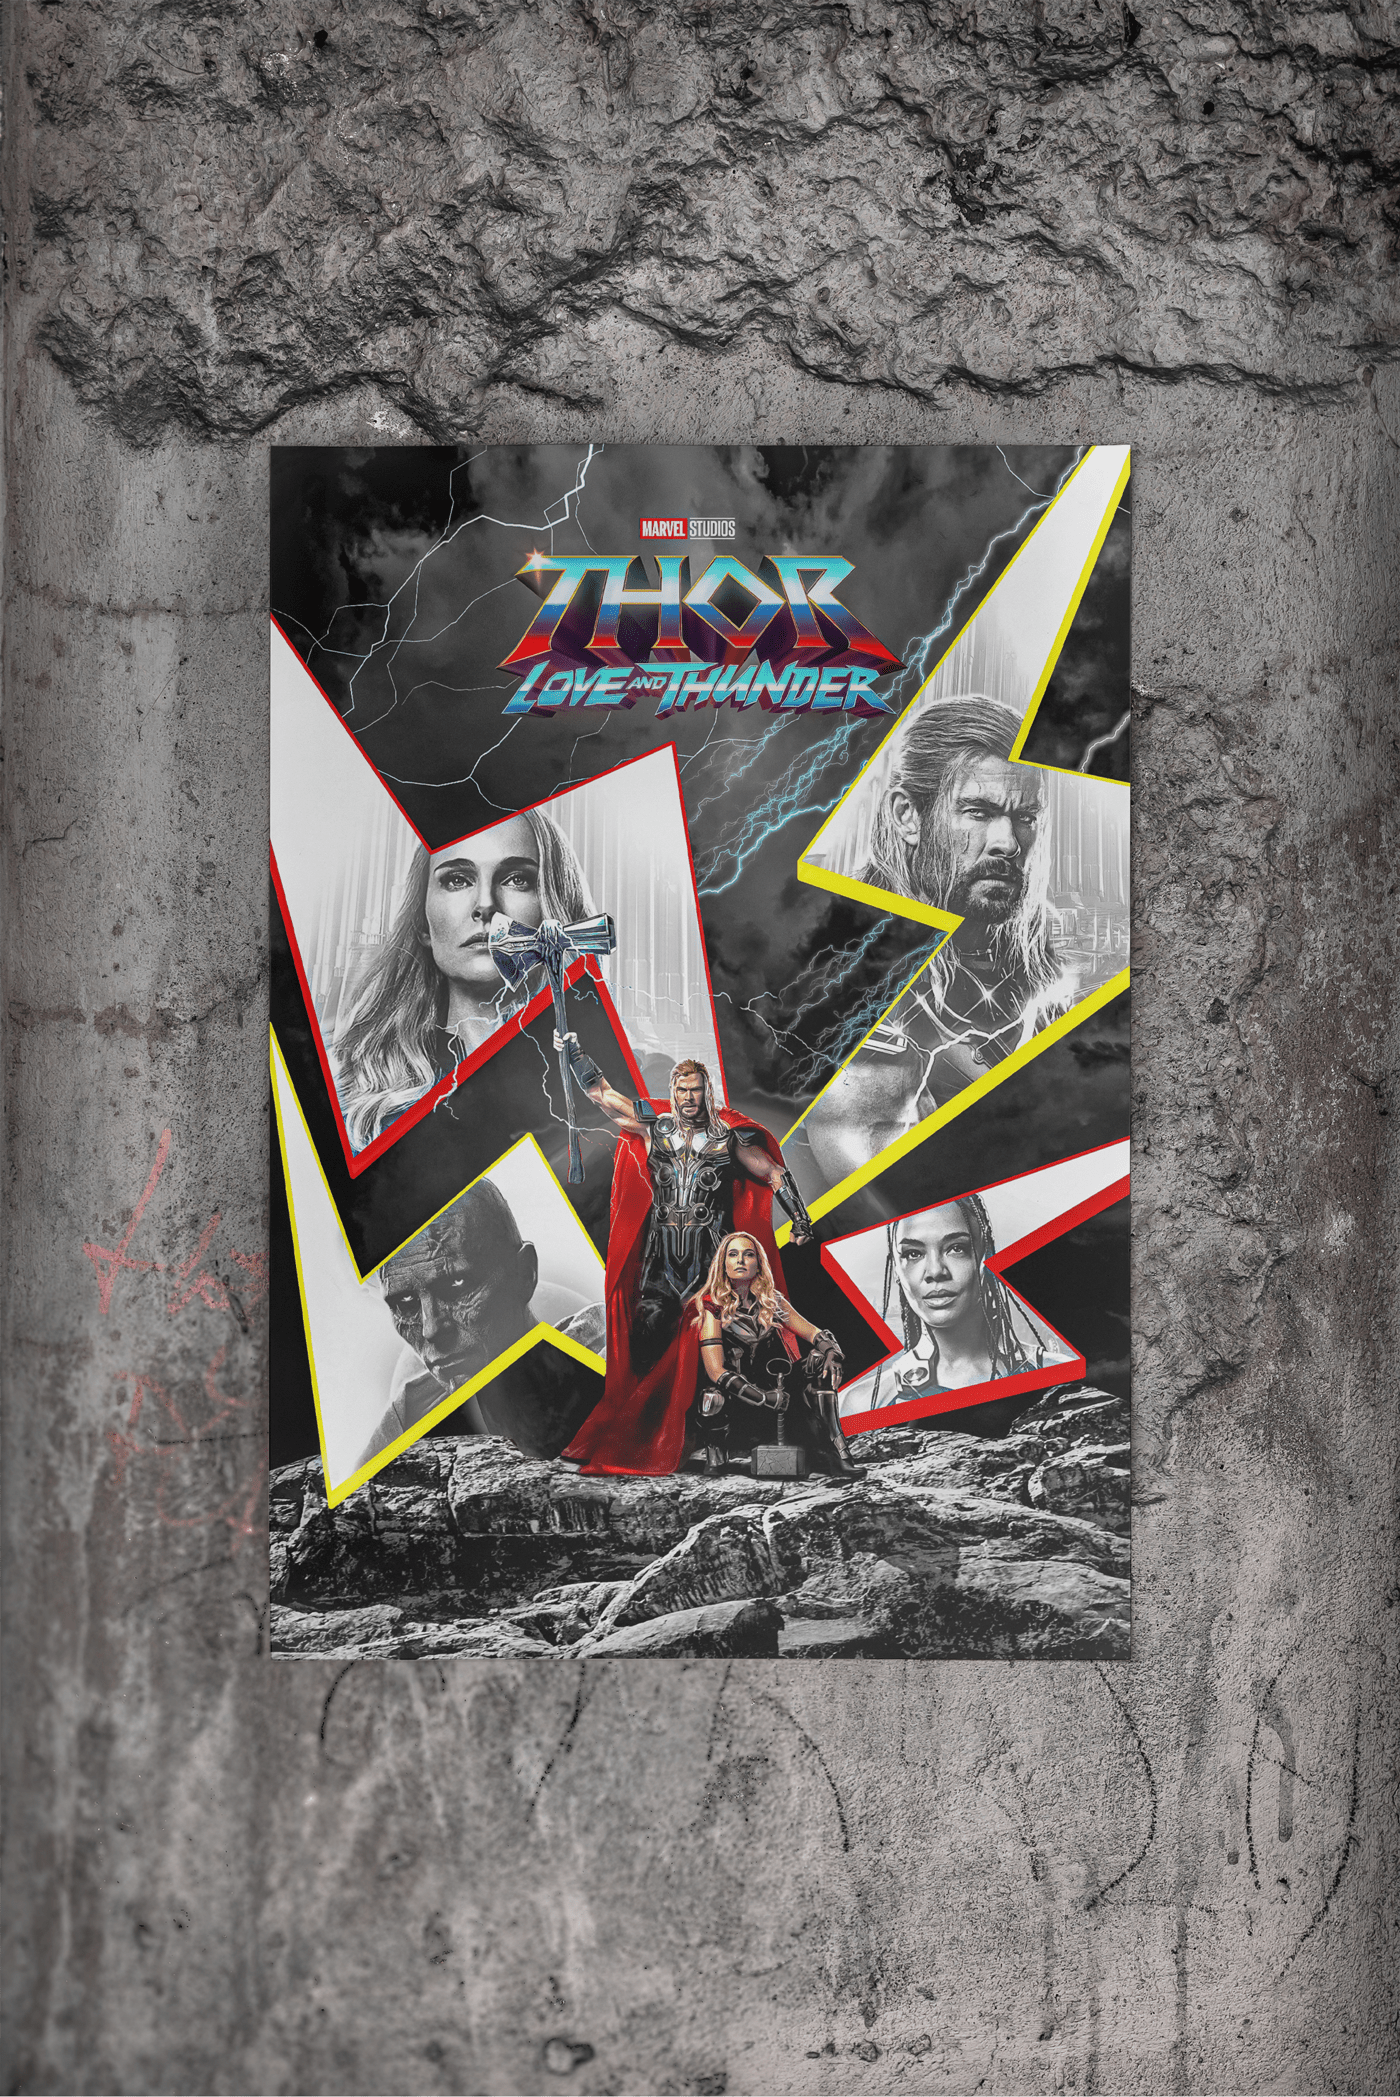 Avengers Loki Love and Thunder marvel marvel comics movie poster poster Thor art Marvel Studios